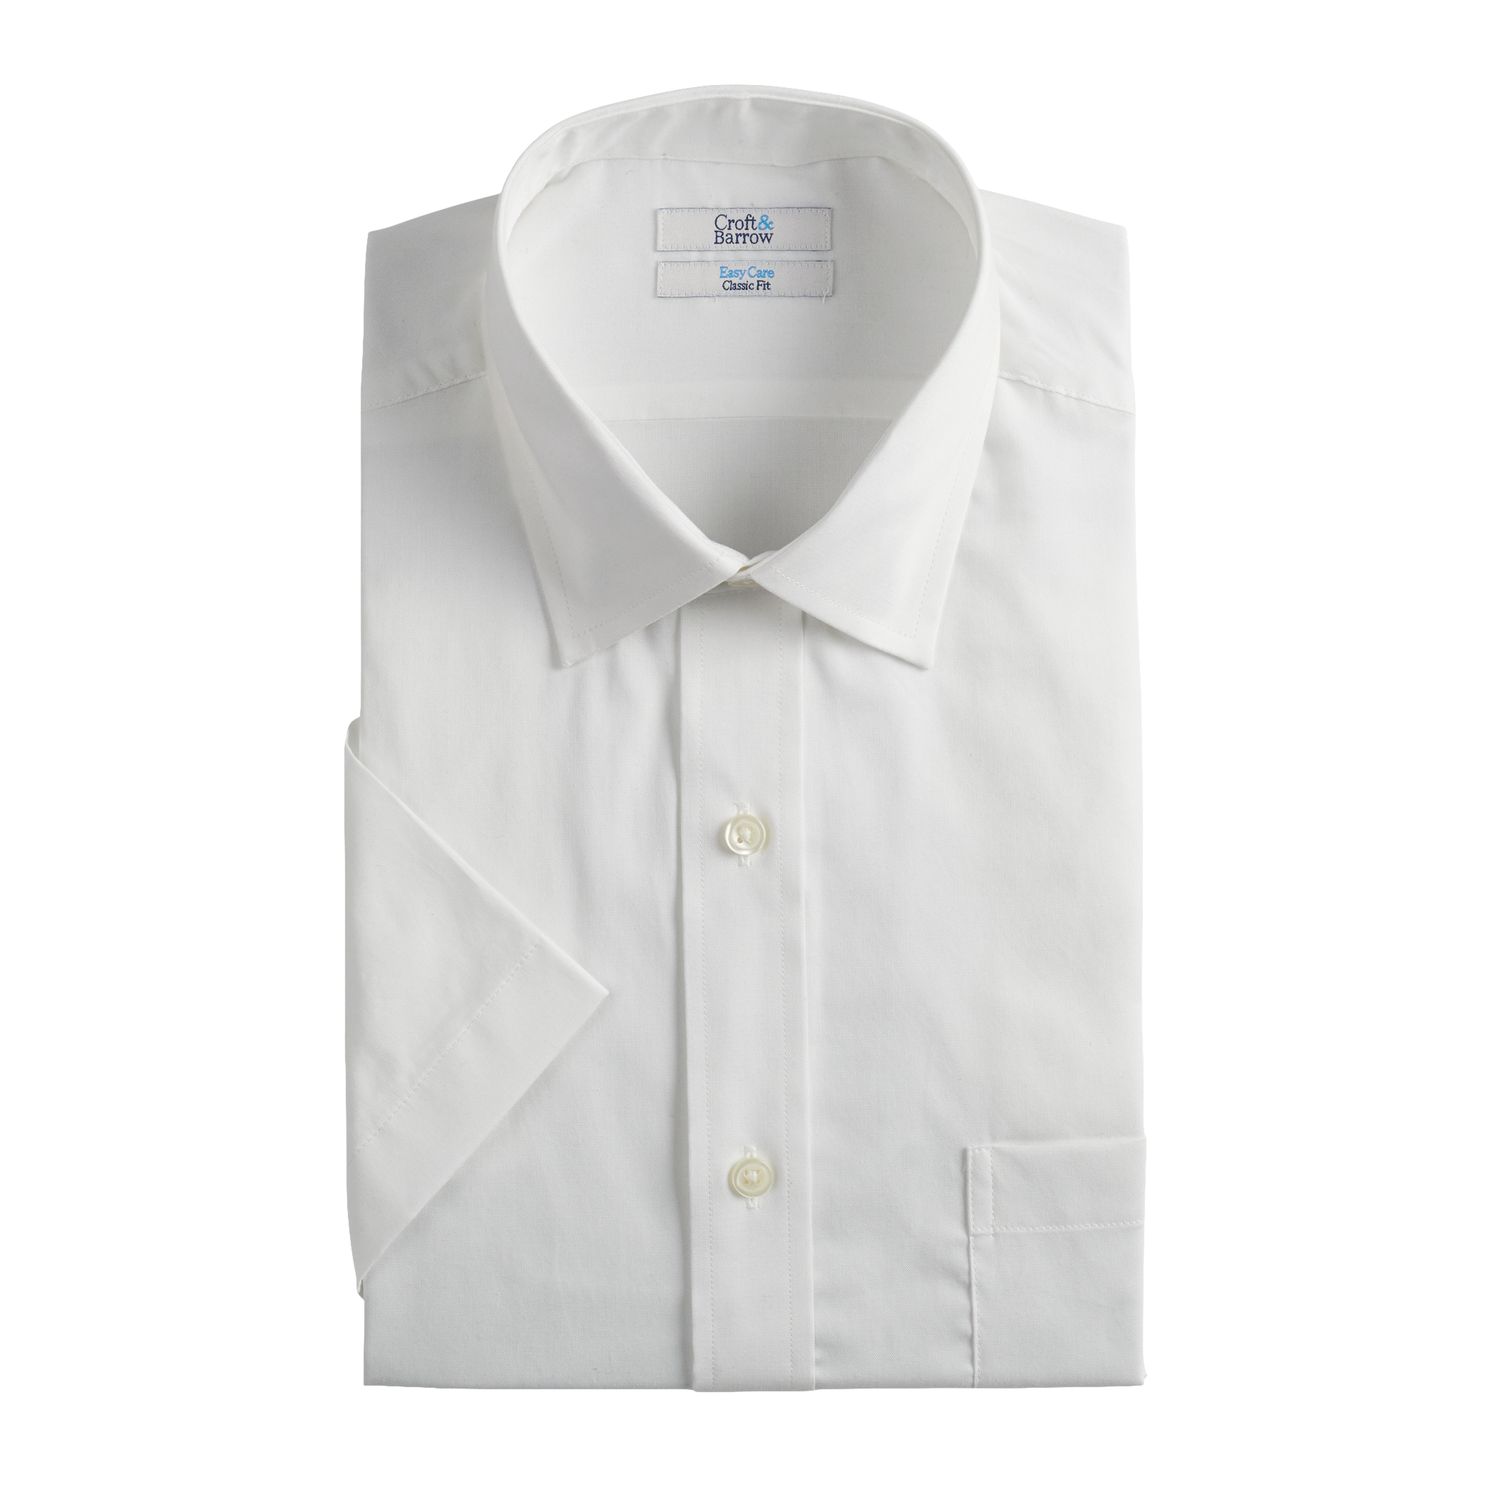 men's short sleeve white dress shirt clothing